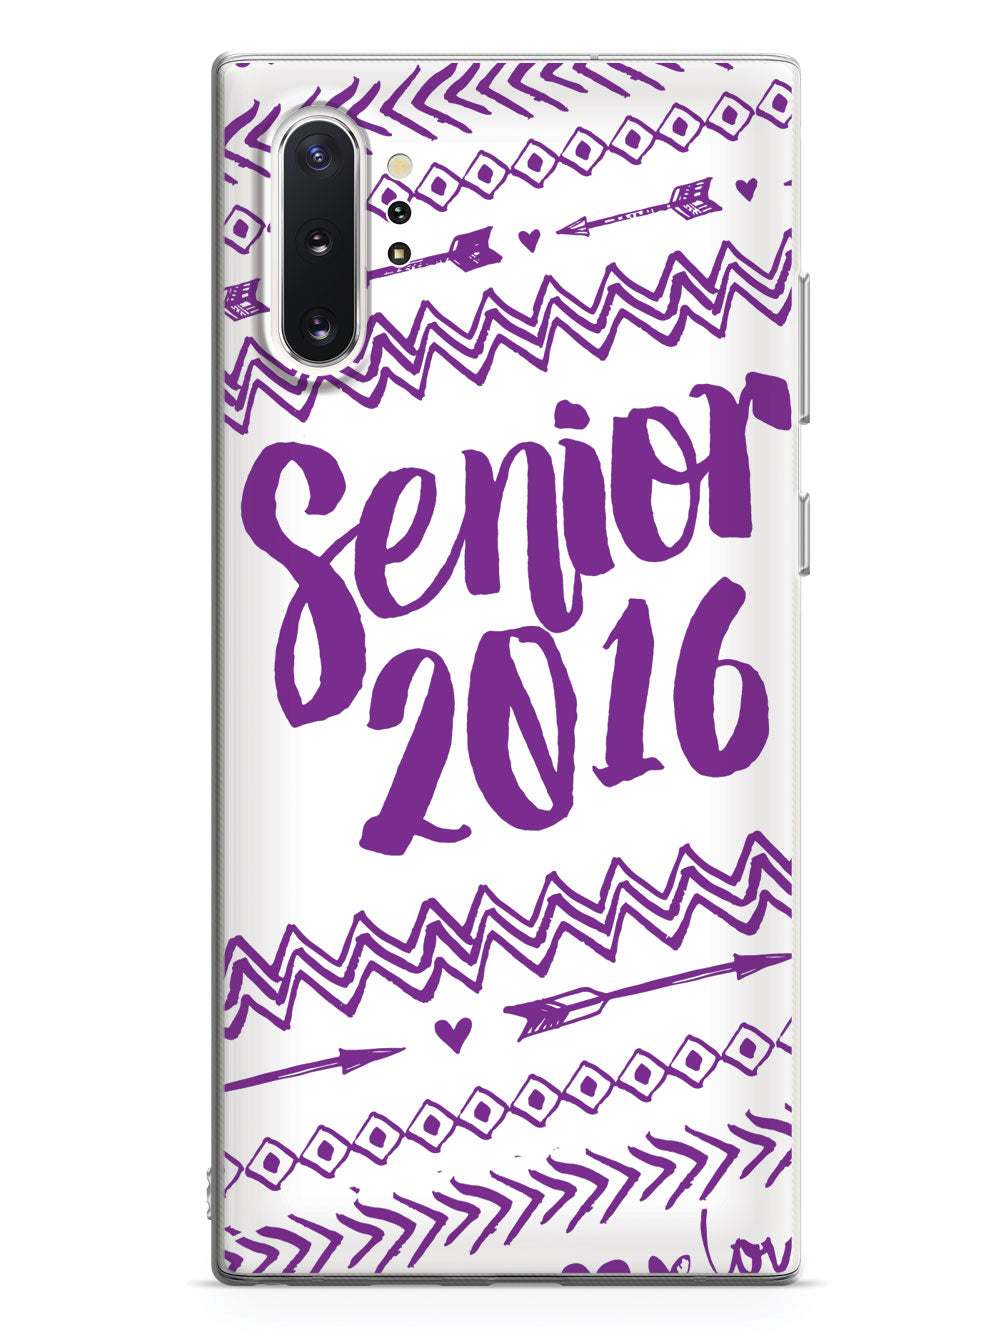 Senior 2016 - Purple Case